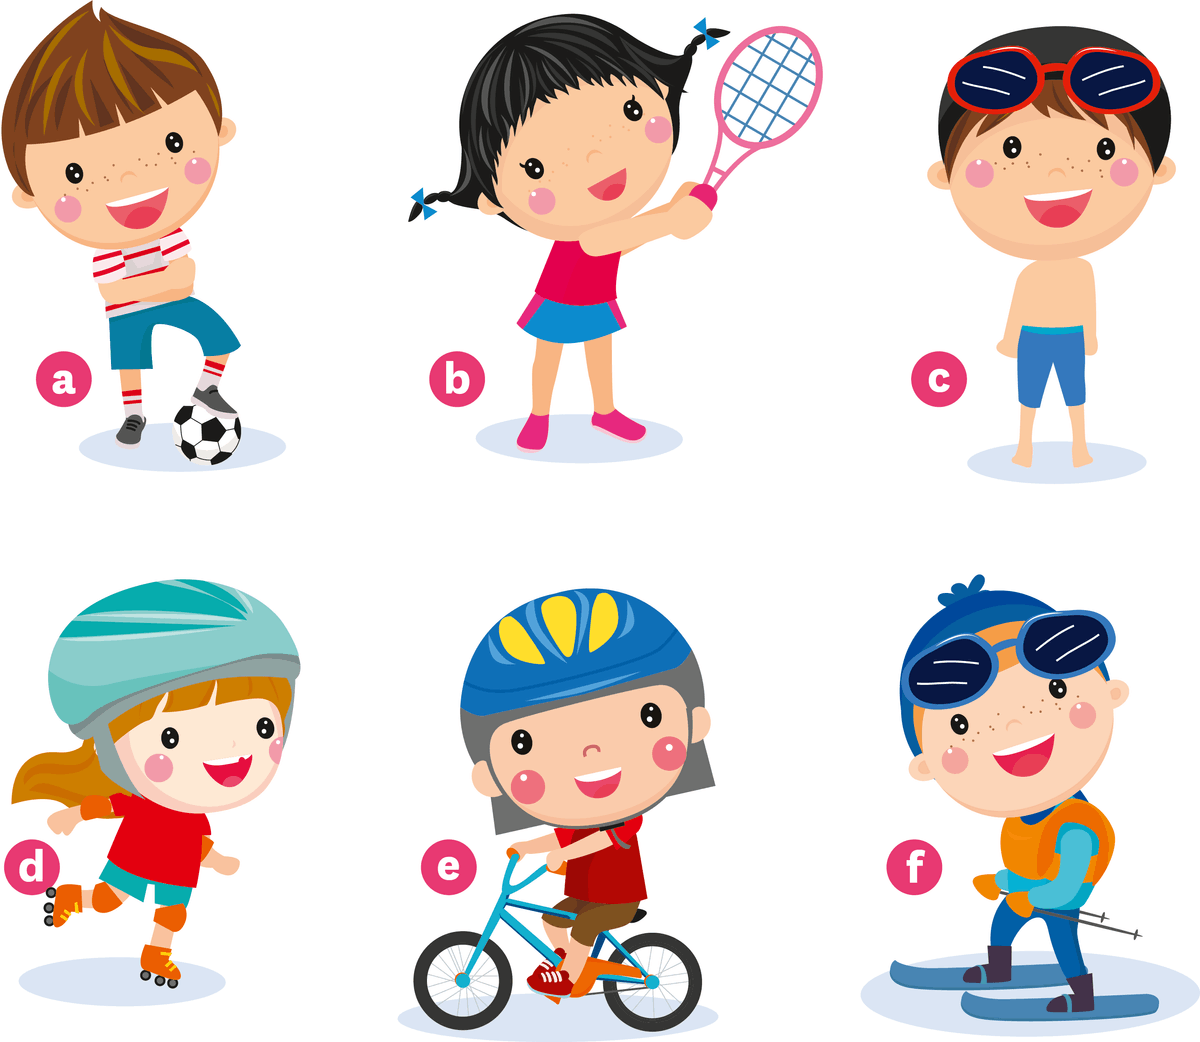 Six enfants représentant chacun un sport : a - un enfant avec un ballon de foot, b - un enfant avec une raquette de tennis, c - un enfant avec des lunettes de plongée, d - un enfant avec un casque et des rollers, e - un enfant avec un casque et un vélo, f - un enfant avec des skis.